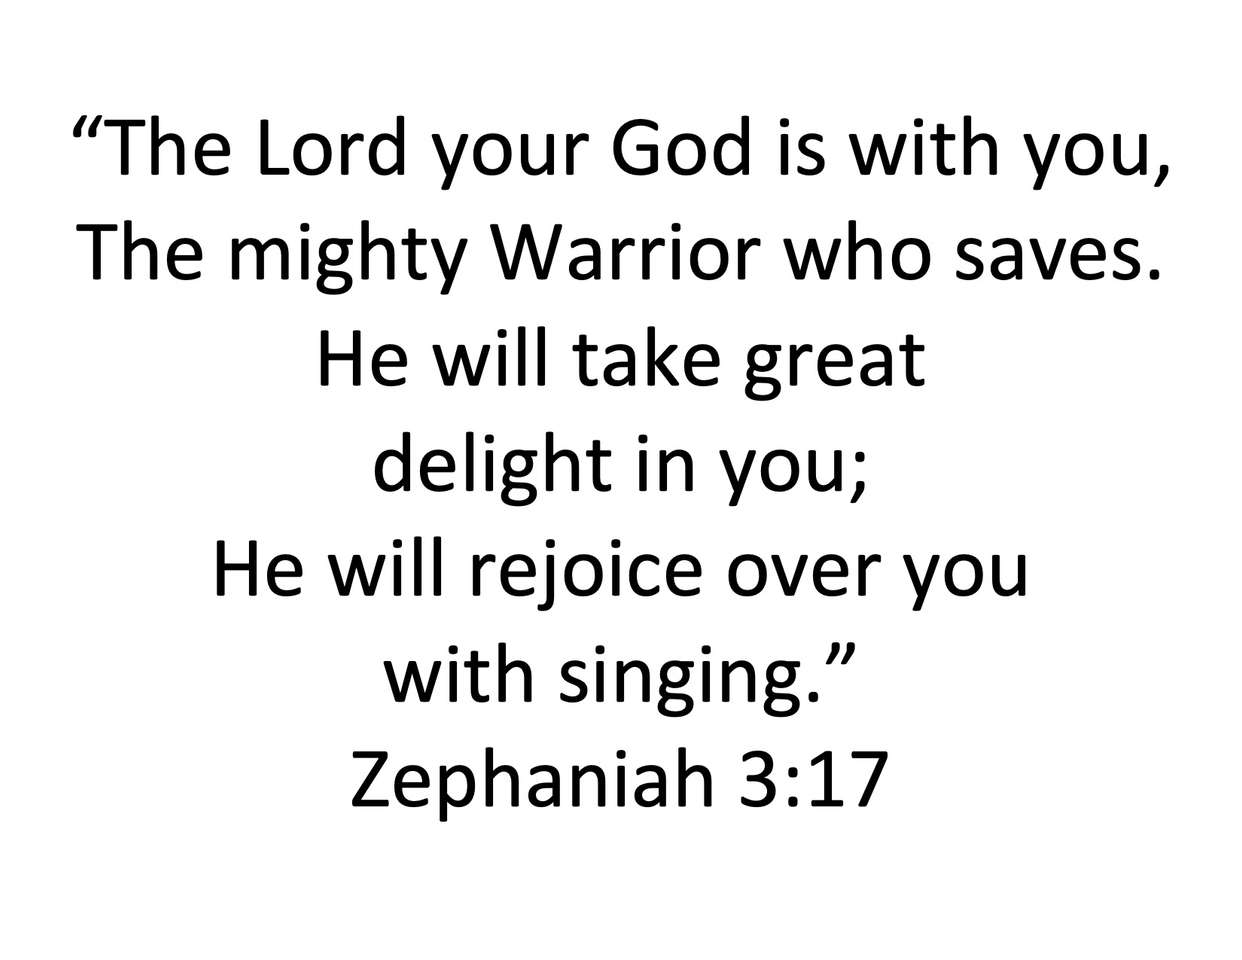 Zephaniah 3: 17 online puzzle